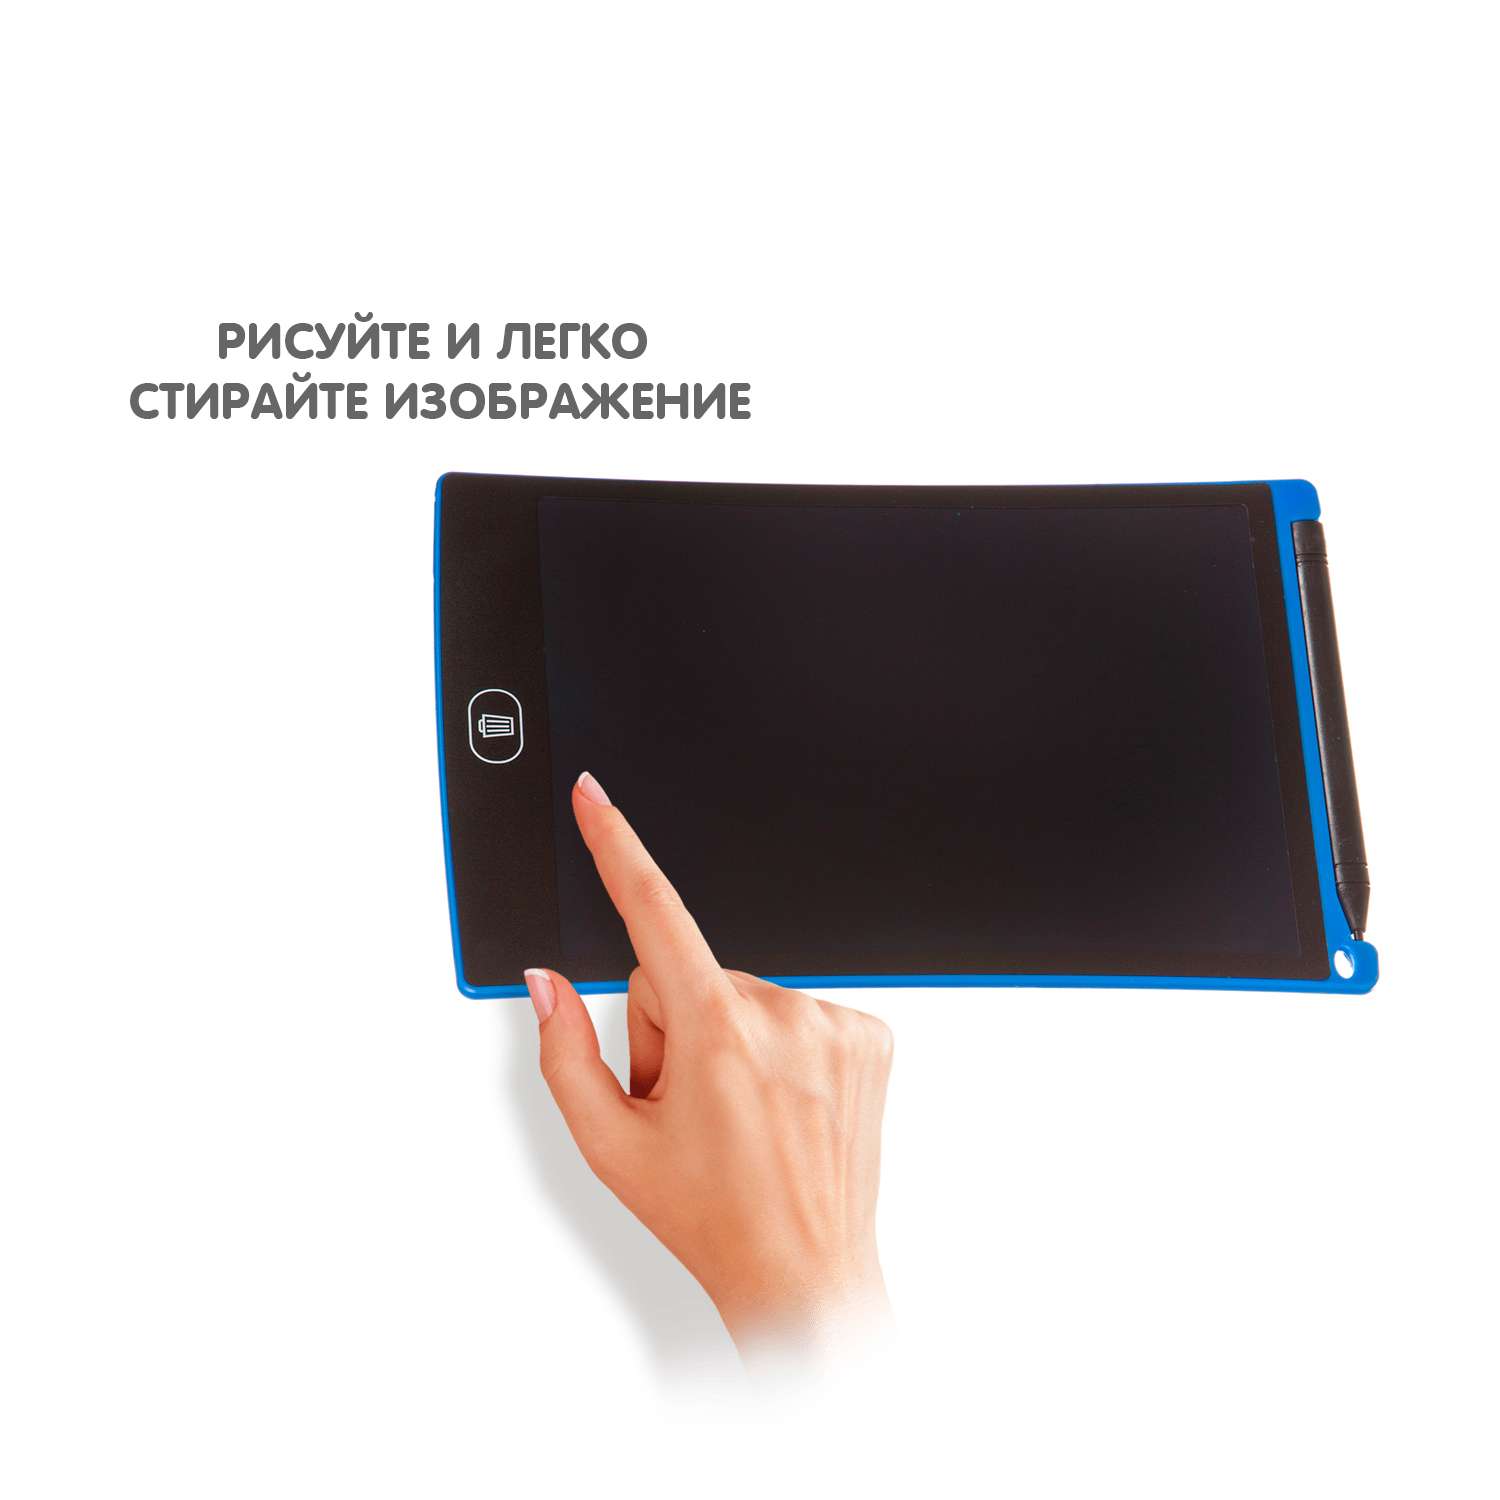 Обучающий планшет BONDIBON монохромный с жидкокристаллическим экраном 8 дюймов синий корпус - фото 4